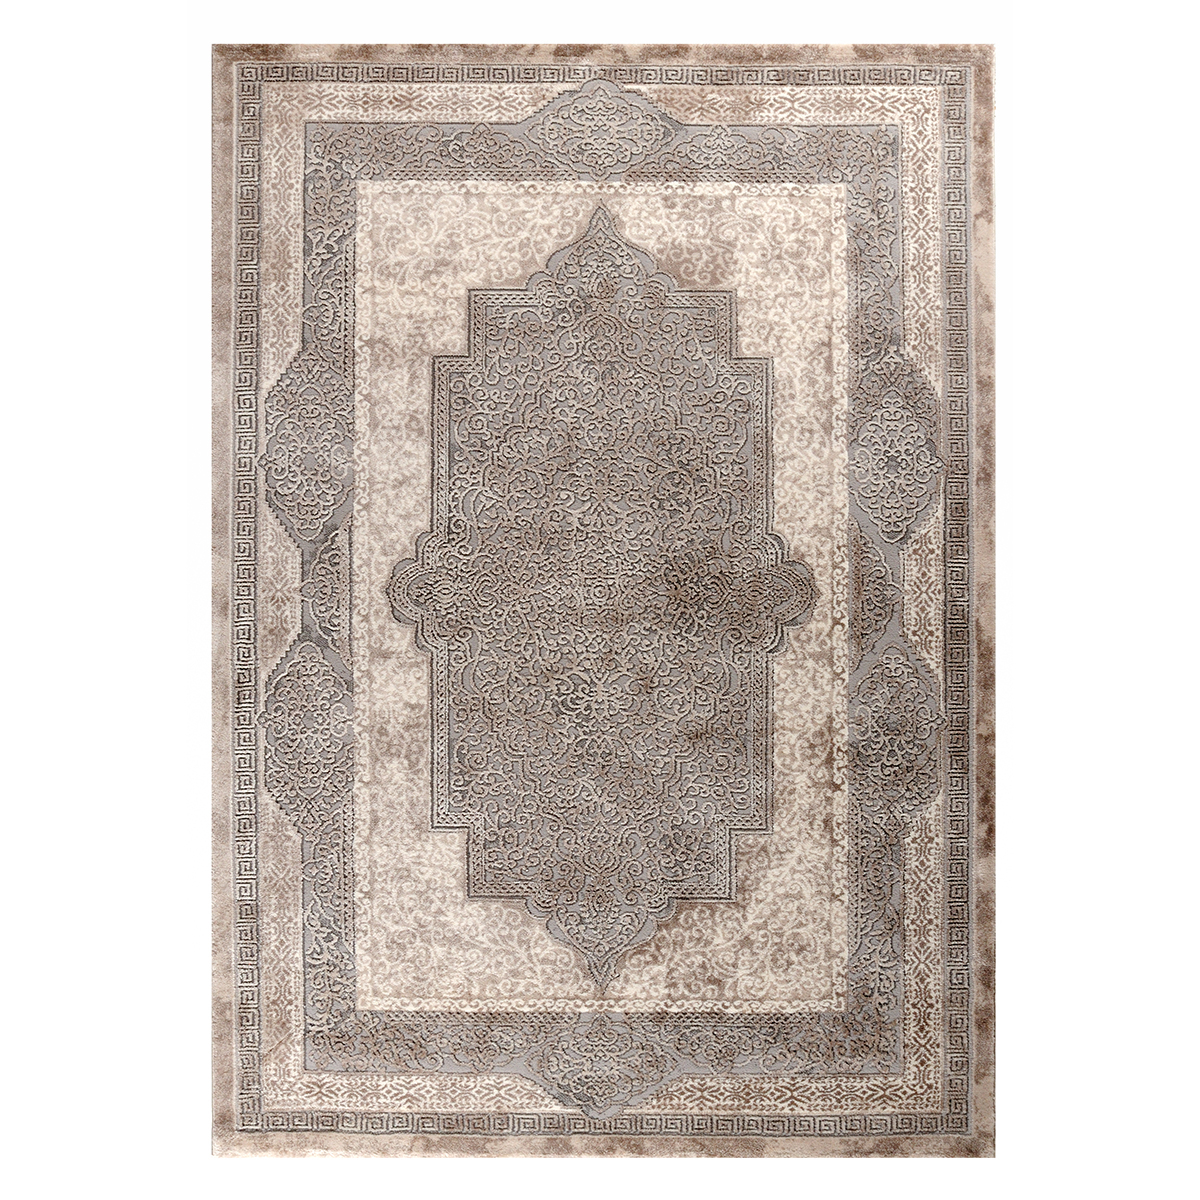 Χαλί (200×250) Tzikas Carpets Elements 33079-975